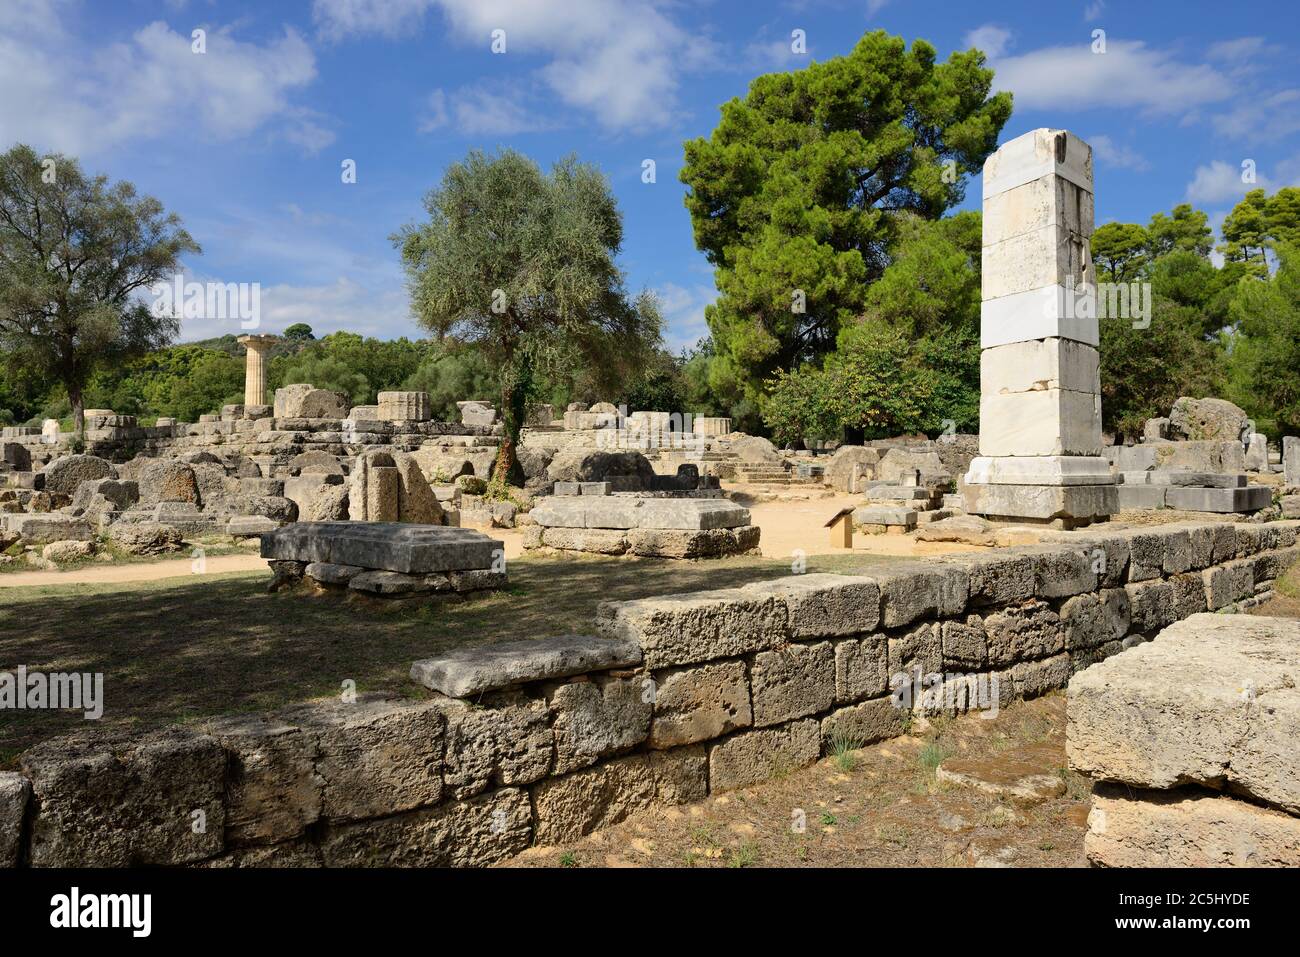 Grèce Olympie, ruines anciennes du temple de Zeus, c'est le bâtiment le plus important dans l'Altis à Olympie, berceau des jeux olympiques - UNESCO W Banque D'Images